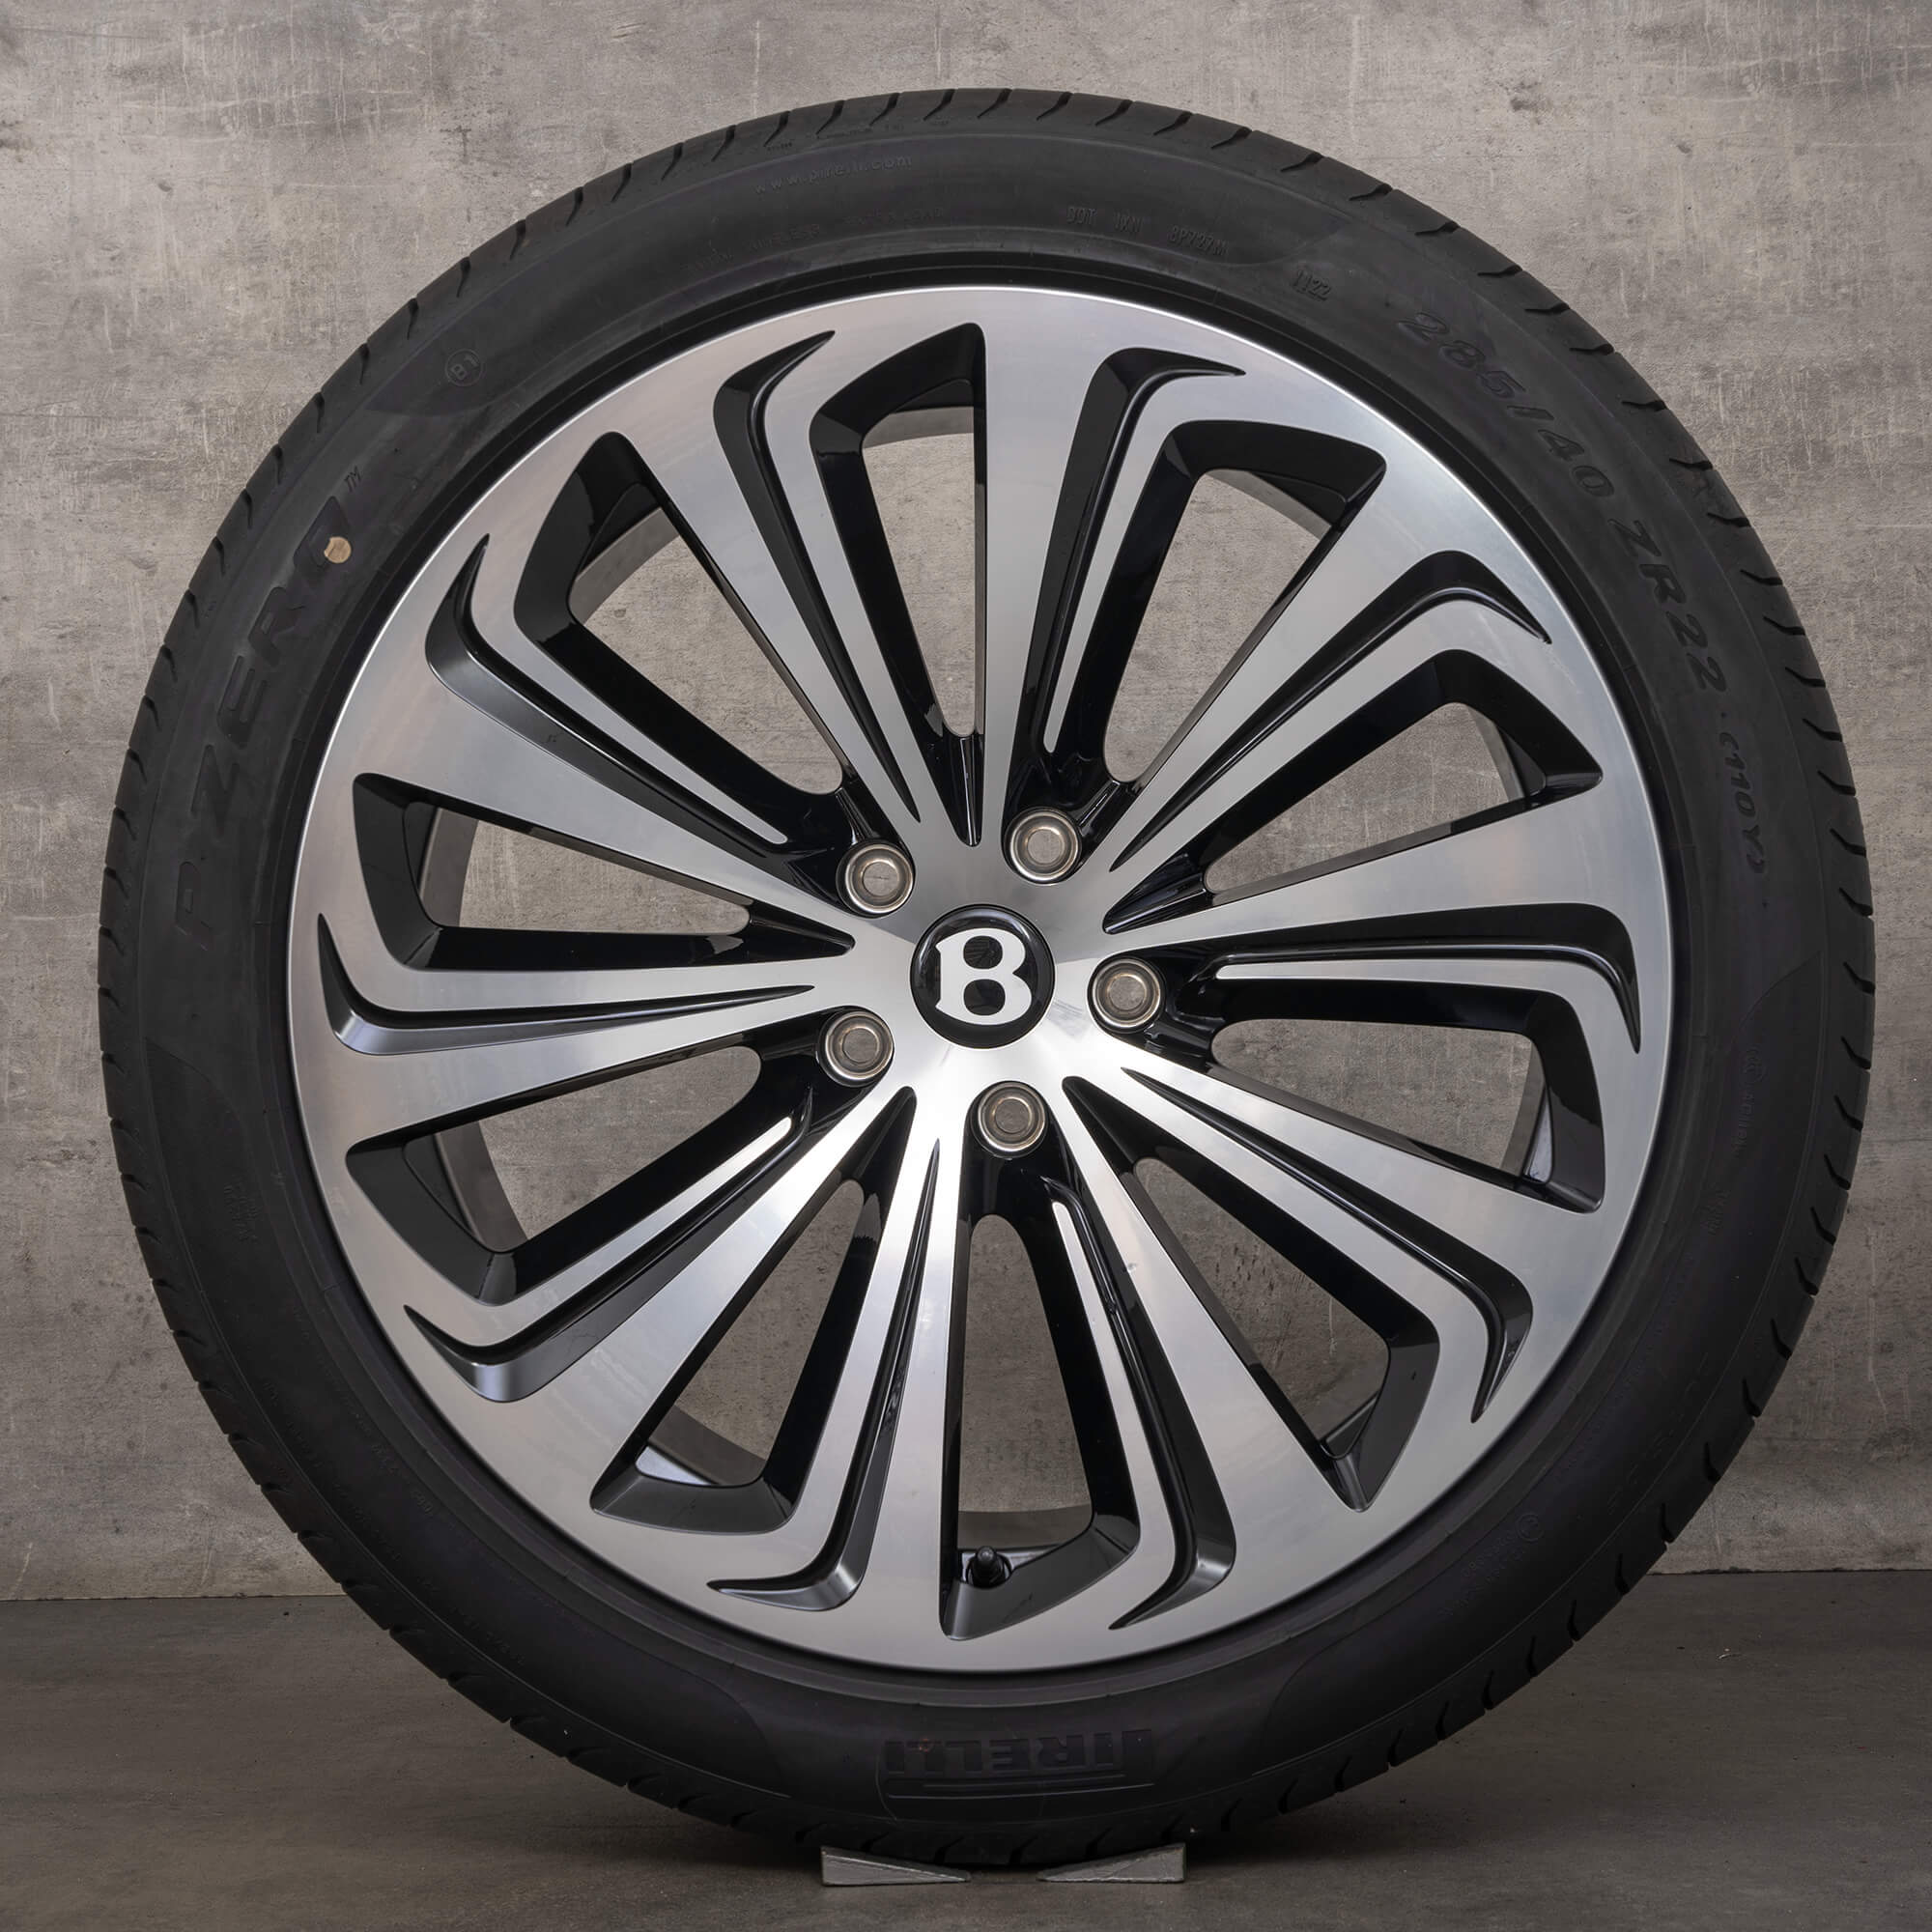 Cerchioni invernali originali Bentley Bentayga da 22 pollici 36A601025S neri